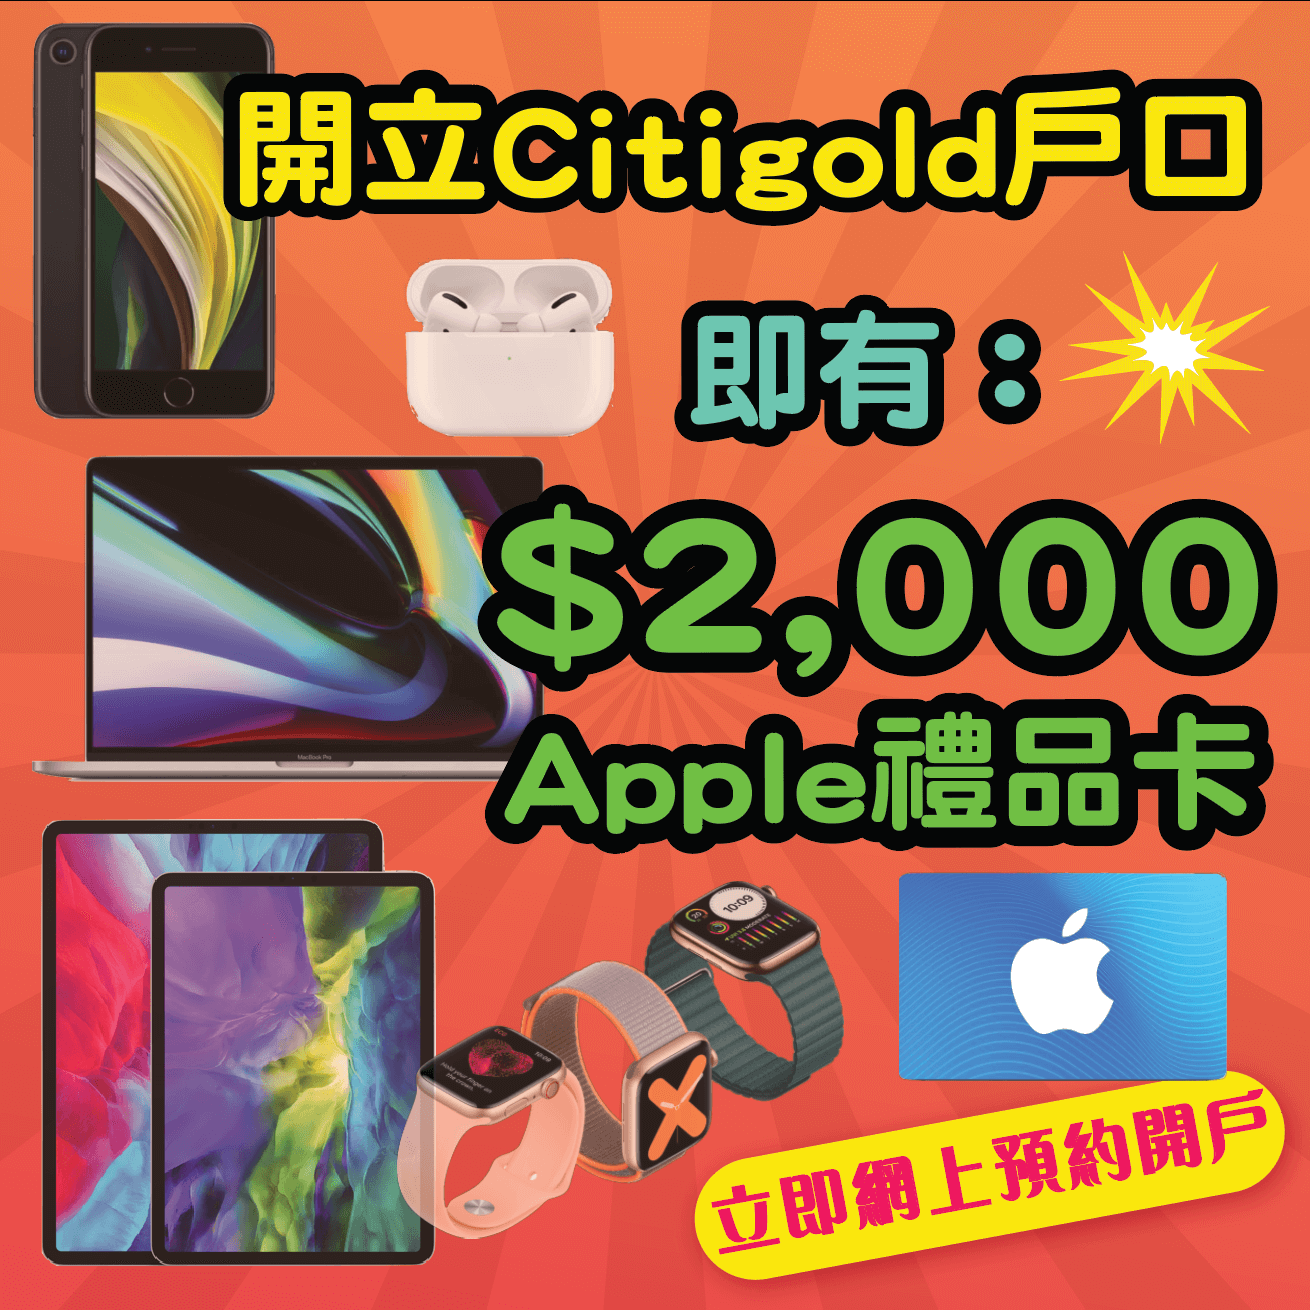 【開戶即有額外$2,000 Apple Gift Card】9月30日或之前經小斯申請Citigold有額外$2,000 Apple Gift Card！開戶仲有高達$38,800獎賞！